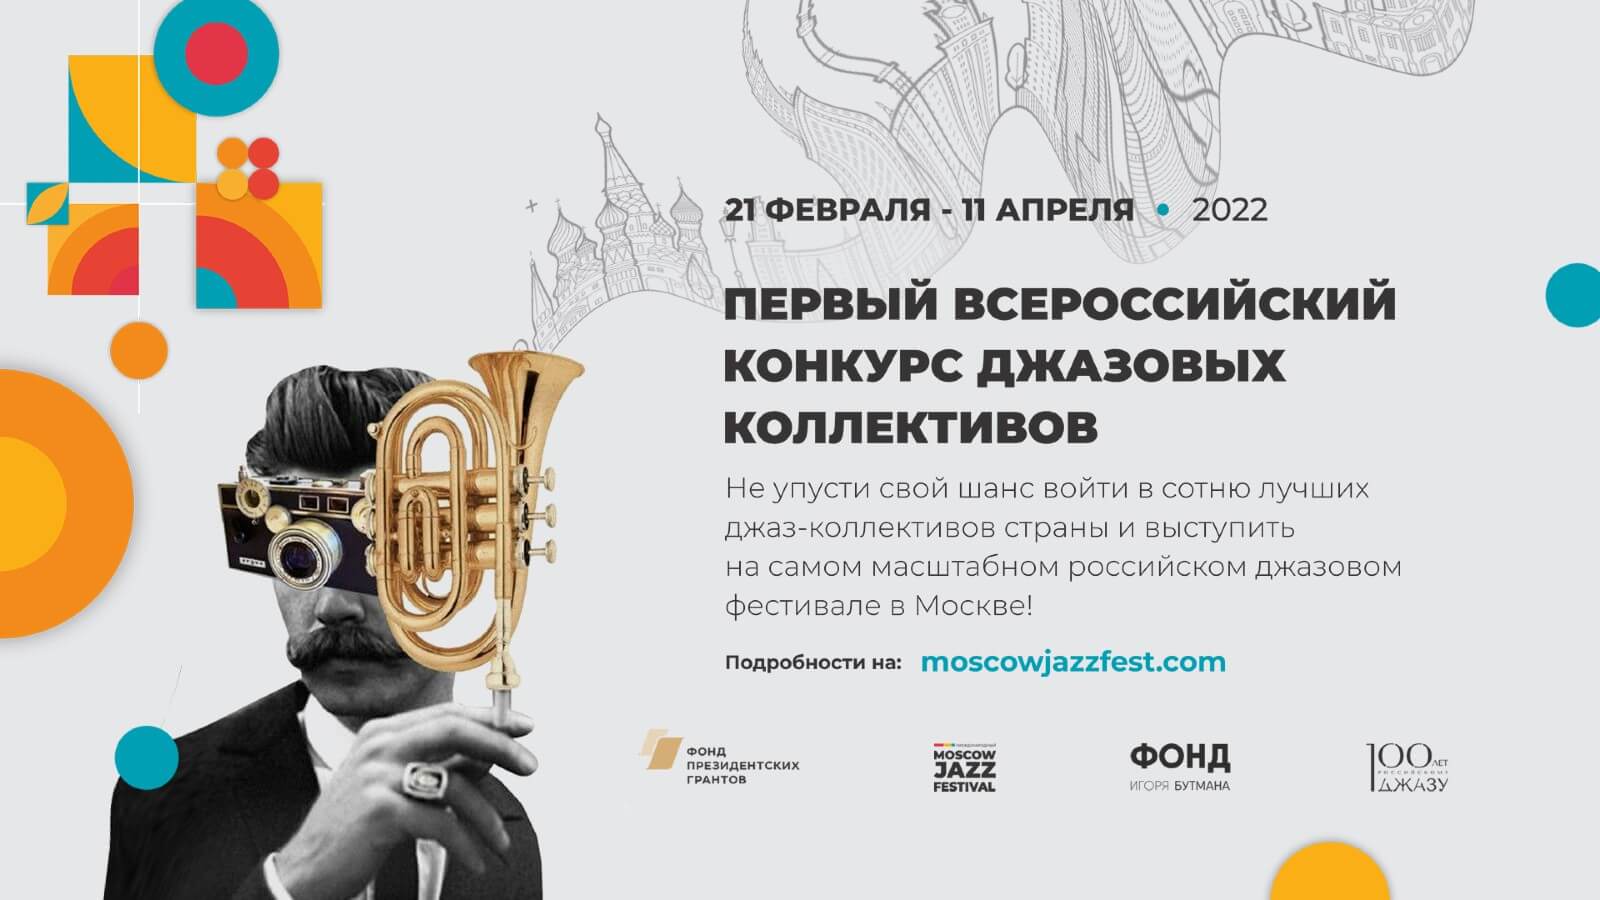 Открыт прием заявок на участие в Первом Всероссийском конкурсе молодежных джазовых коллективов